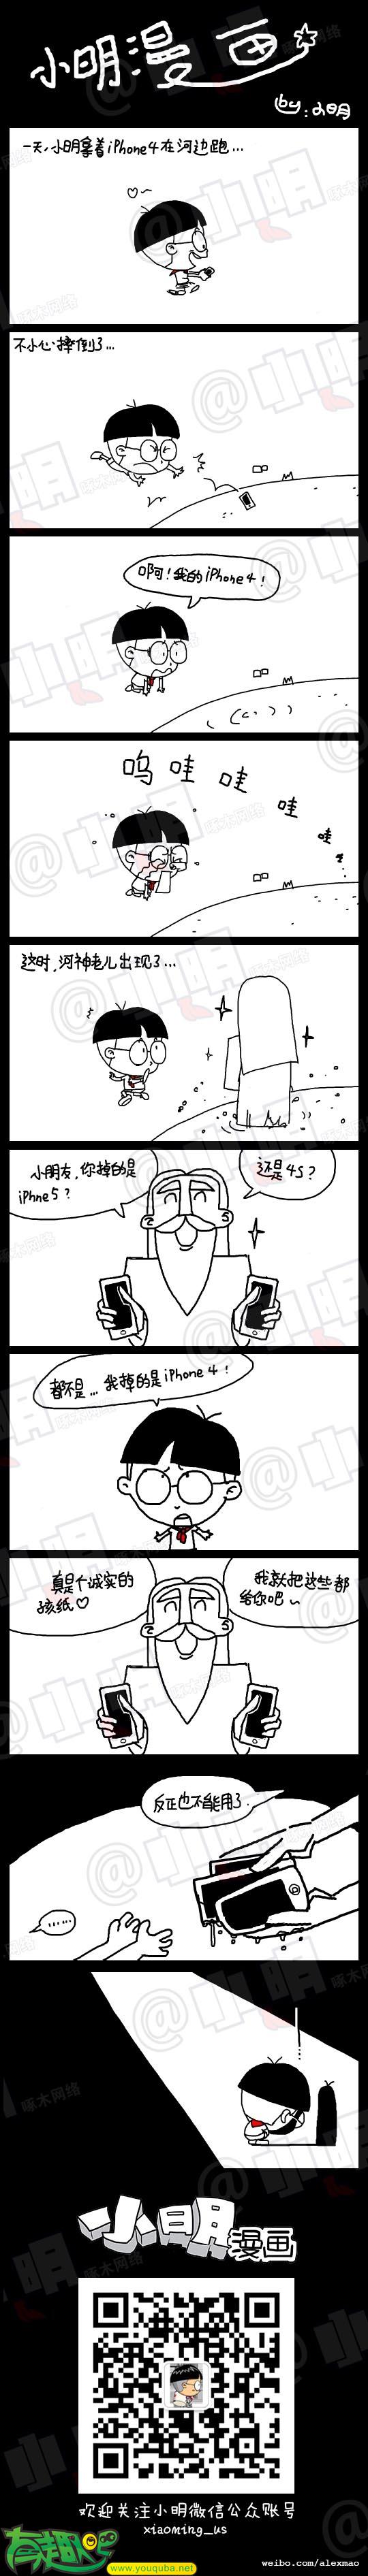 小明系列漫画：这部手机是你的吗？